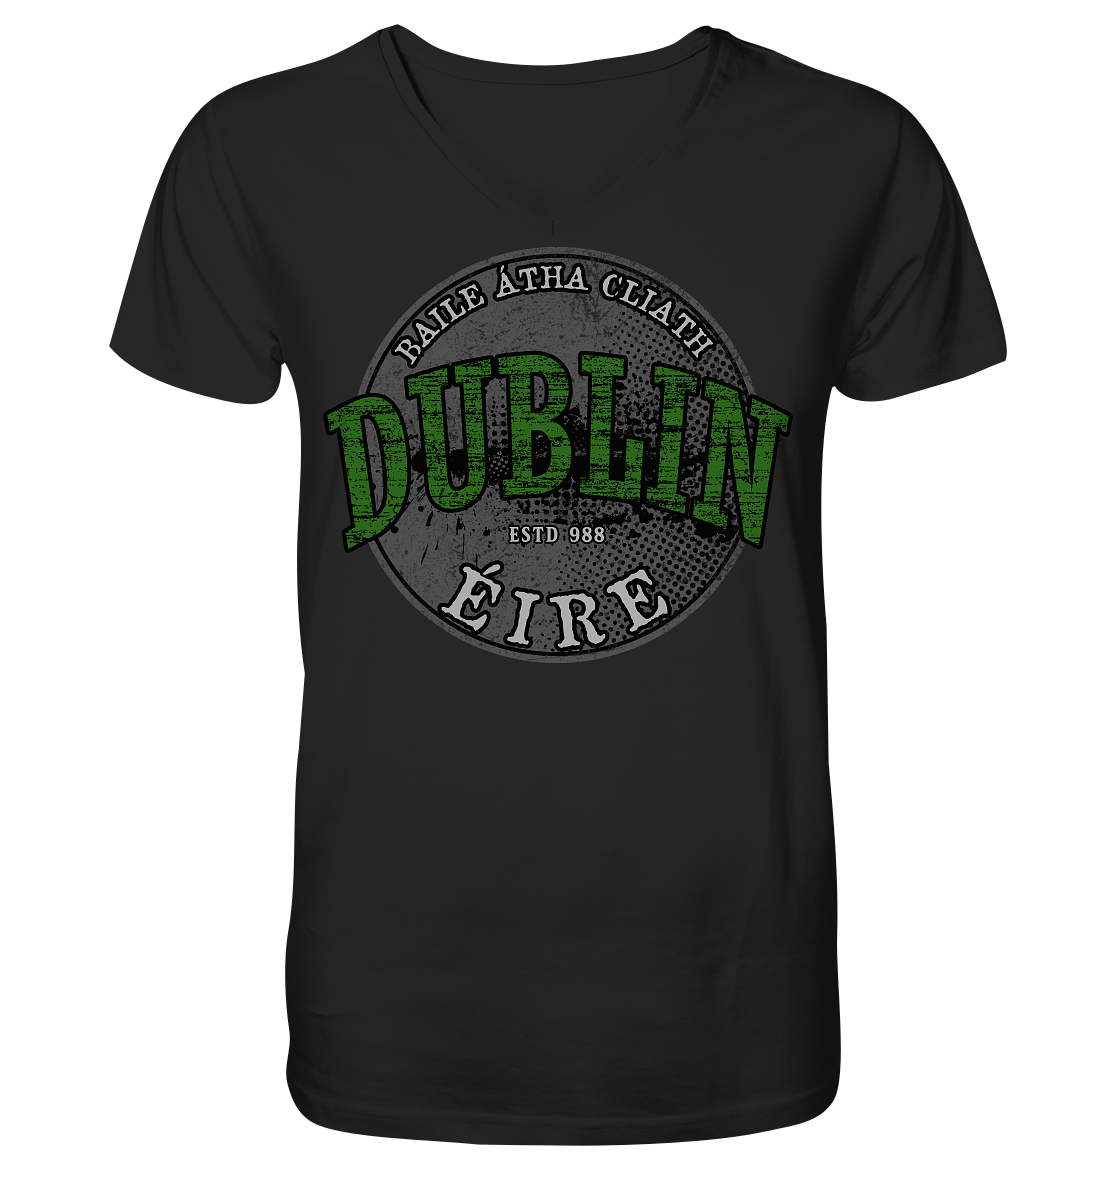 Dublin "Estd 988 / Baile Átha Cliath / Éire" - V-Neck Shirt